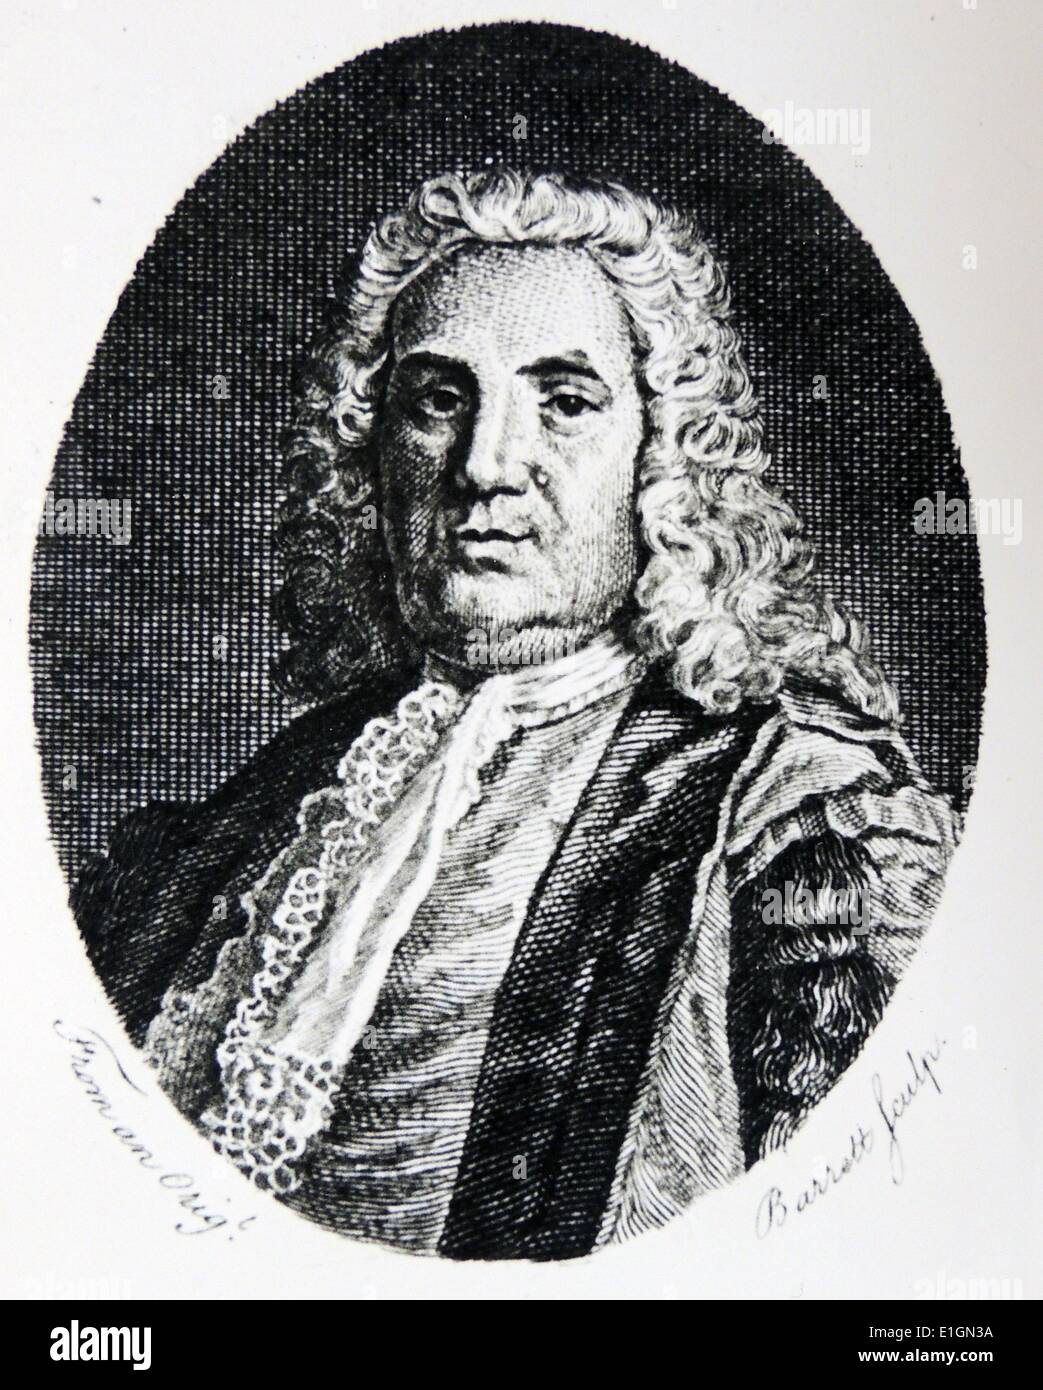 Modischen Londoner Arzt Richard Mead (1673-1754). Einer seiner Patienten war Isaac Newton. Gravur, London, 1753. Stockfoto